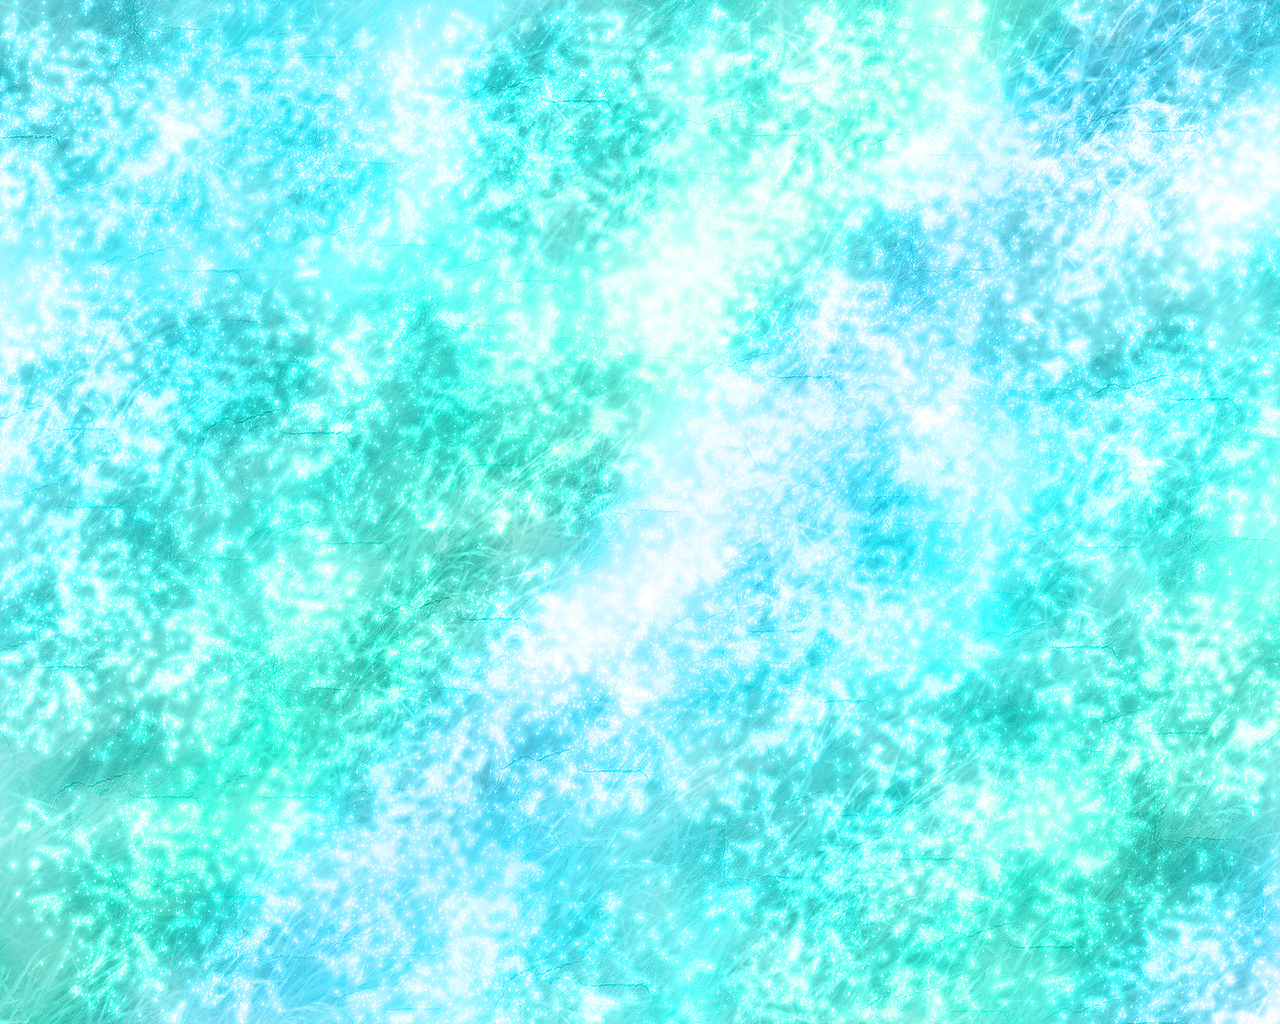 sparkly blue wallpaper by merieth on deviantart 1280x1024